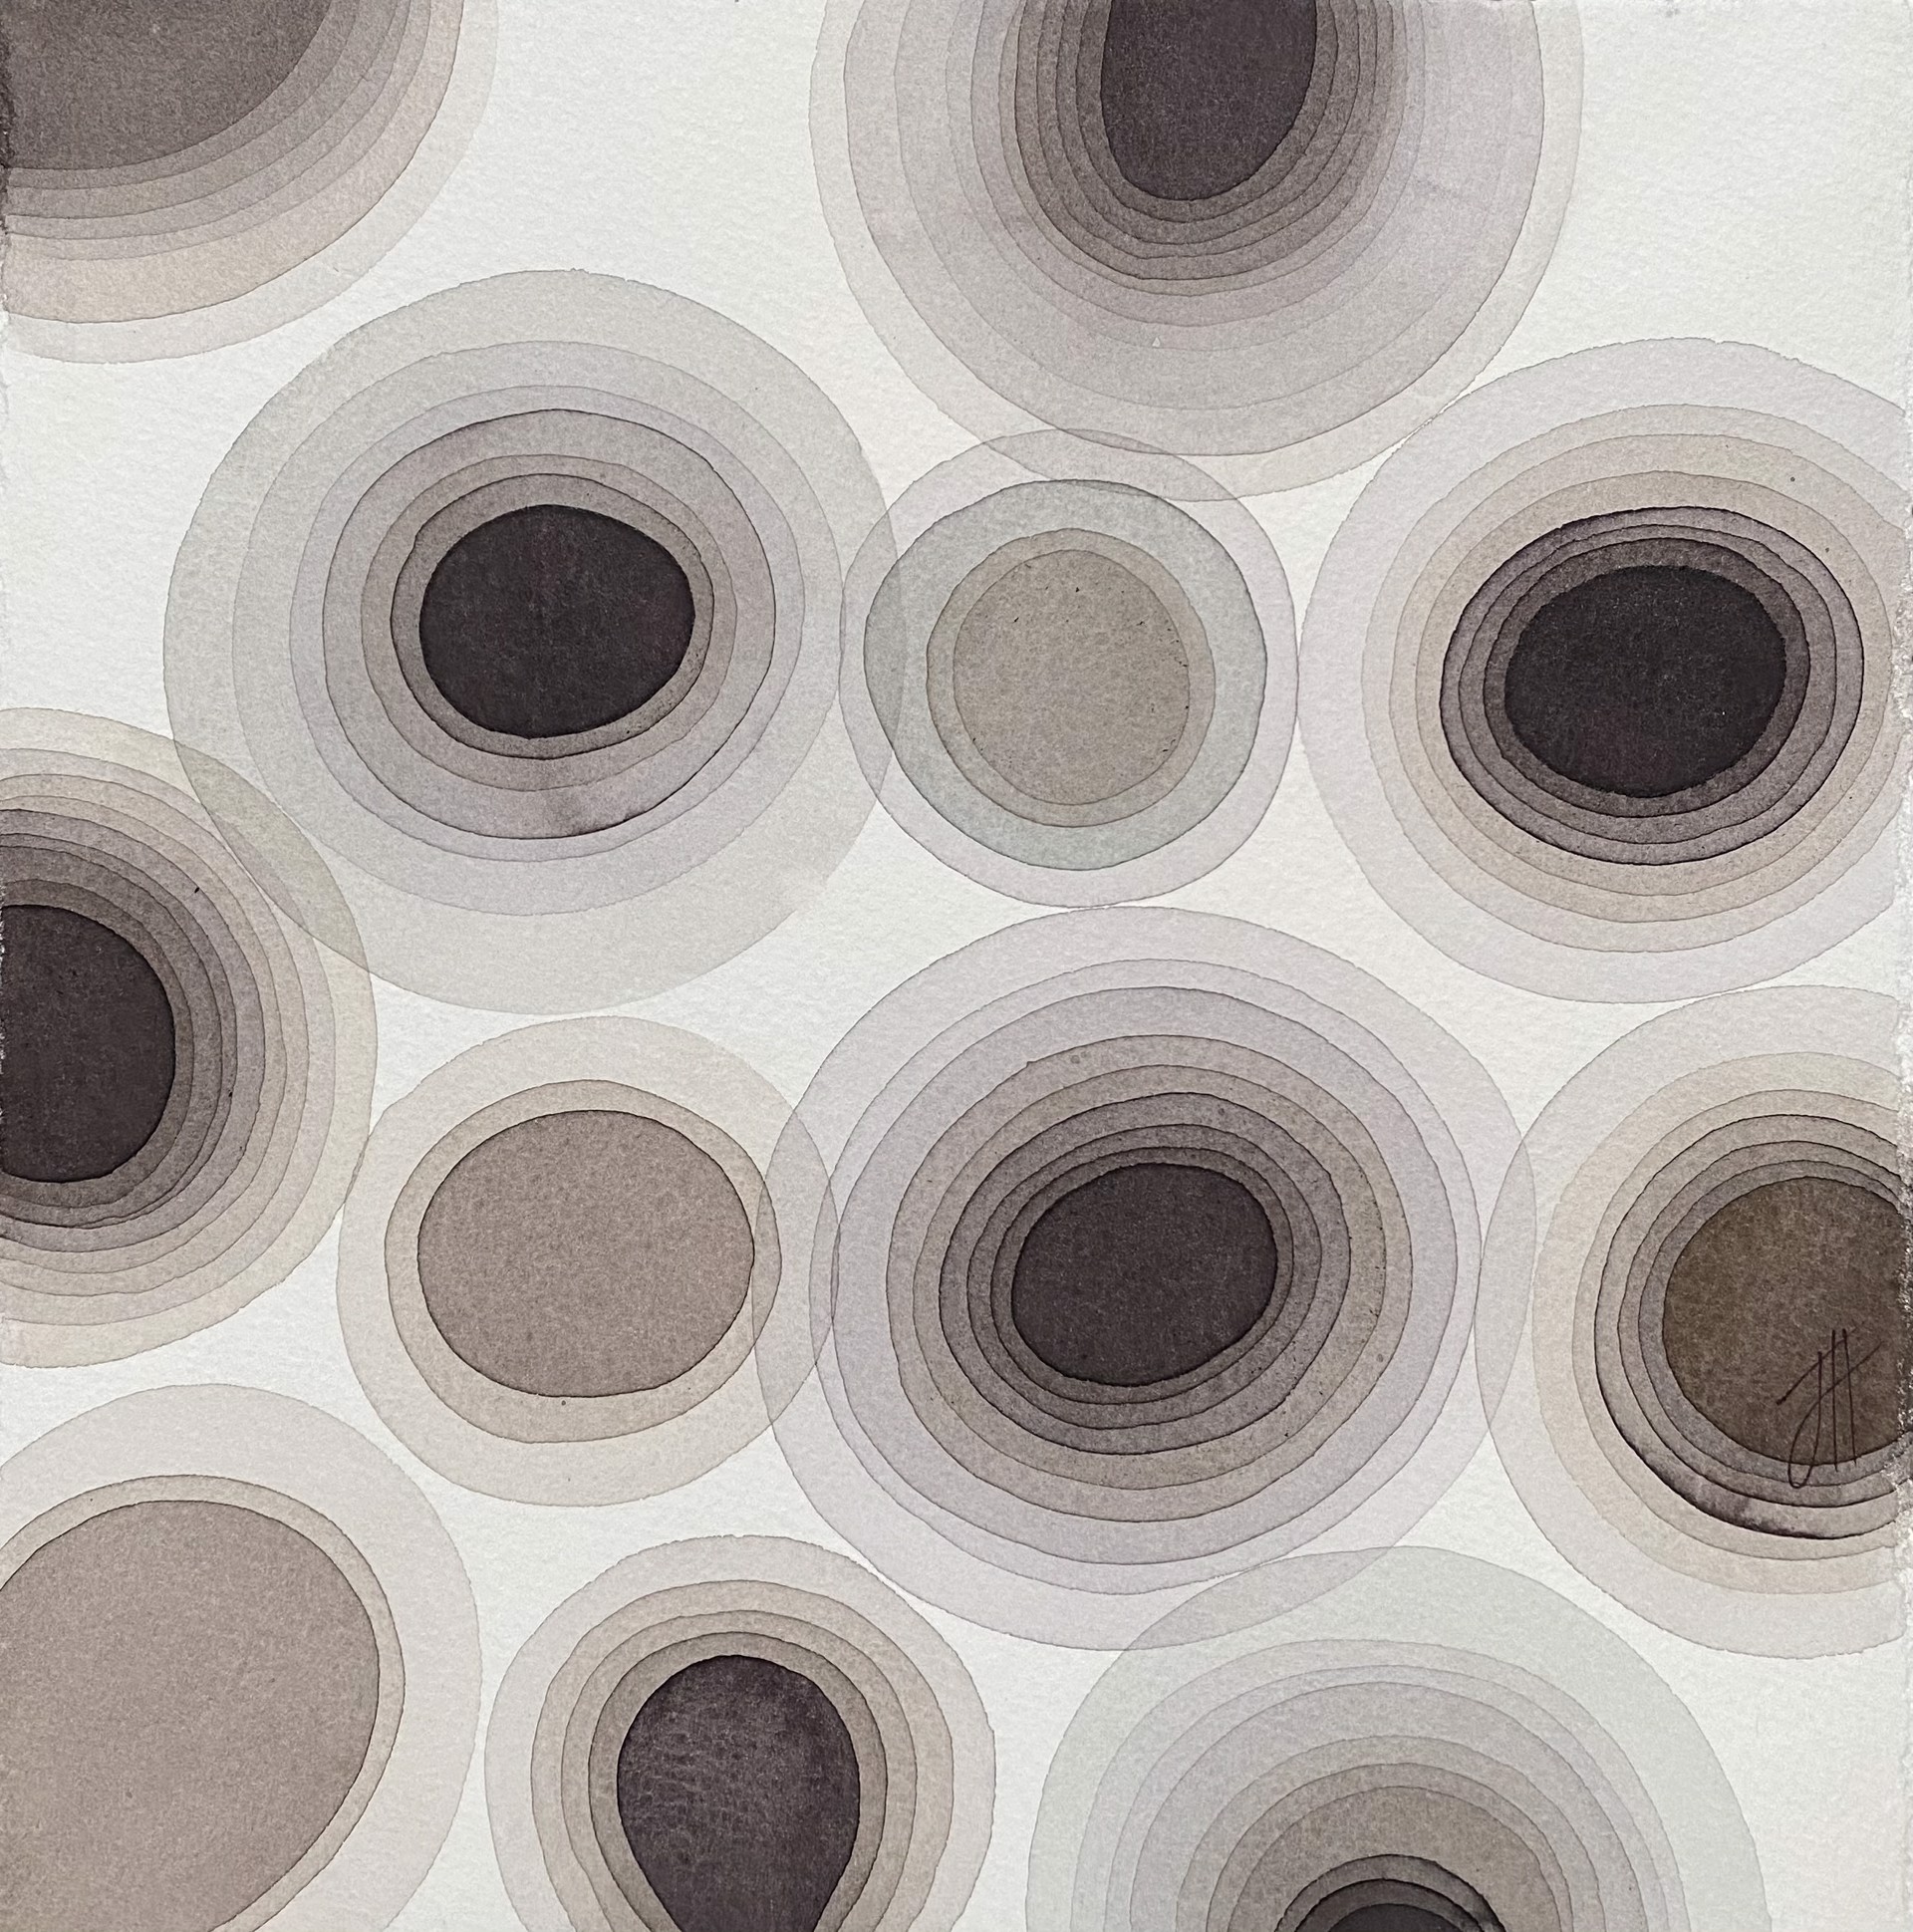 Untitled (Gray Dots) by Jan Heaton